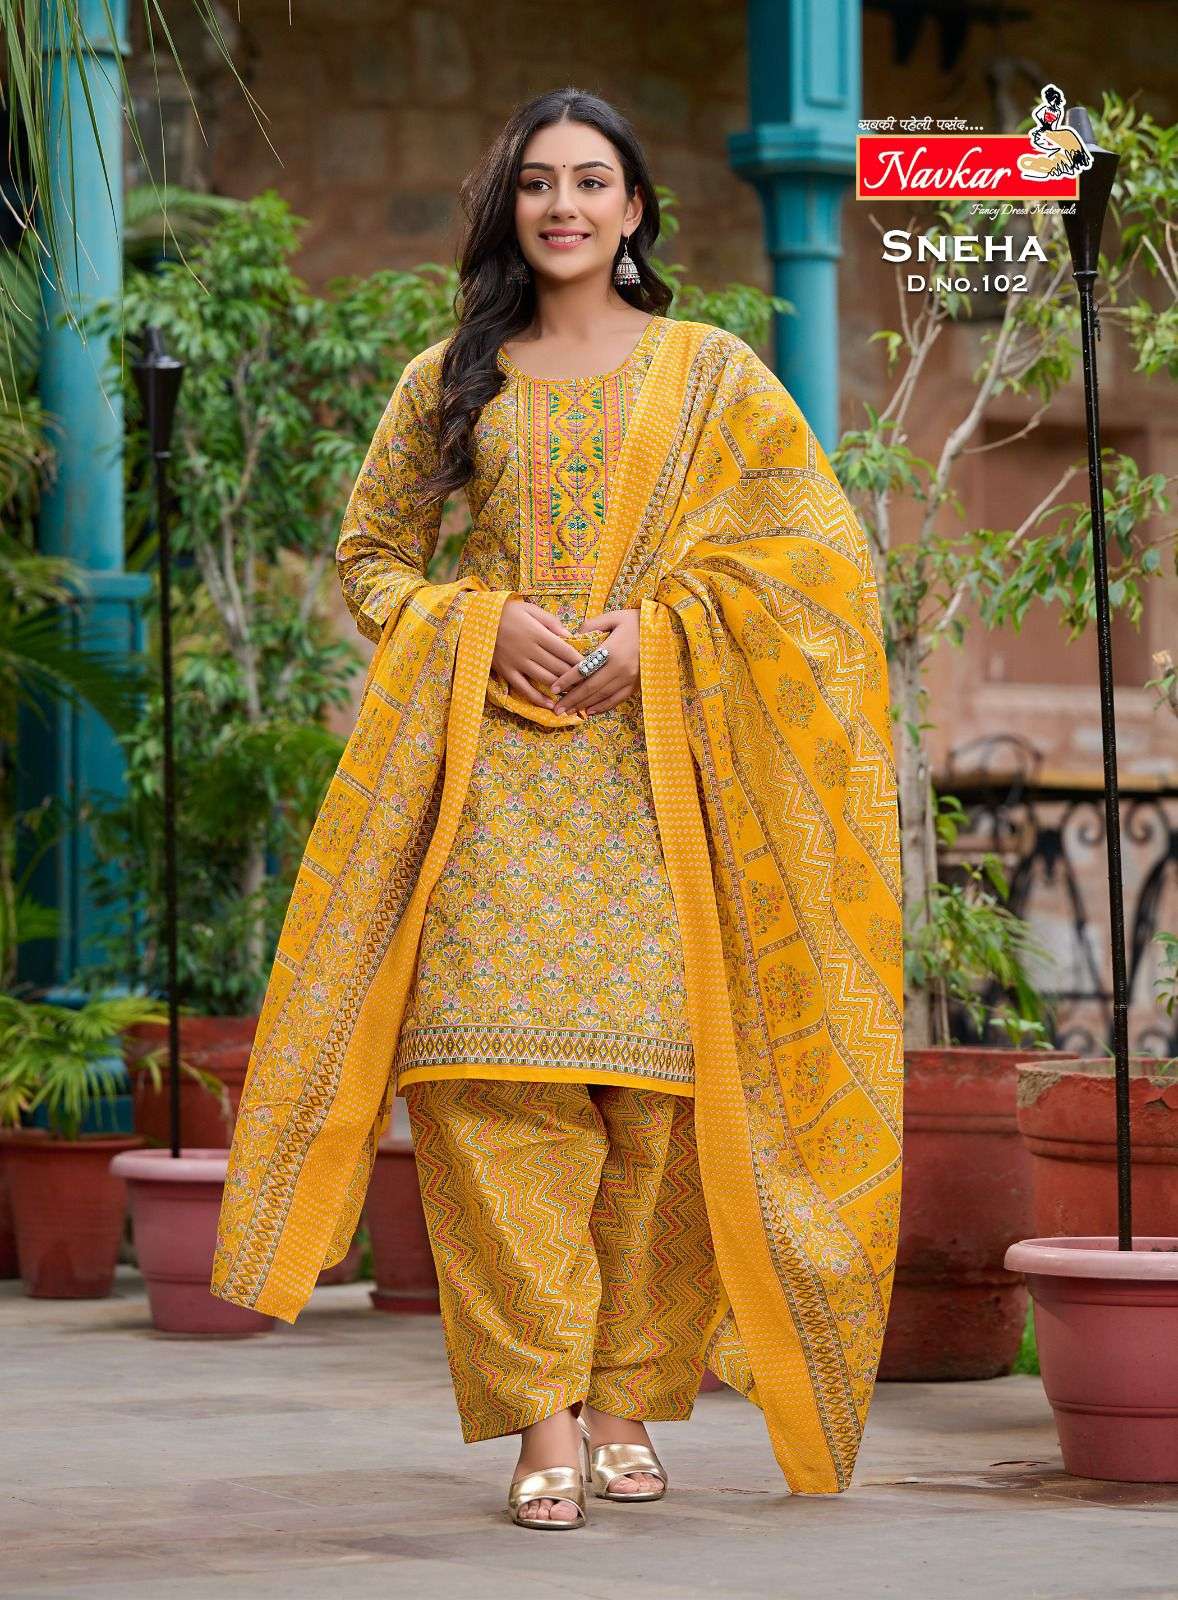 navkar sneha 101-110 series indian designer dress catalogue online dealer surat